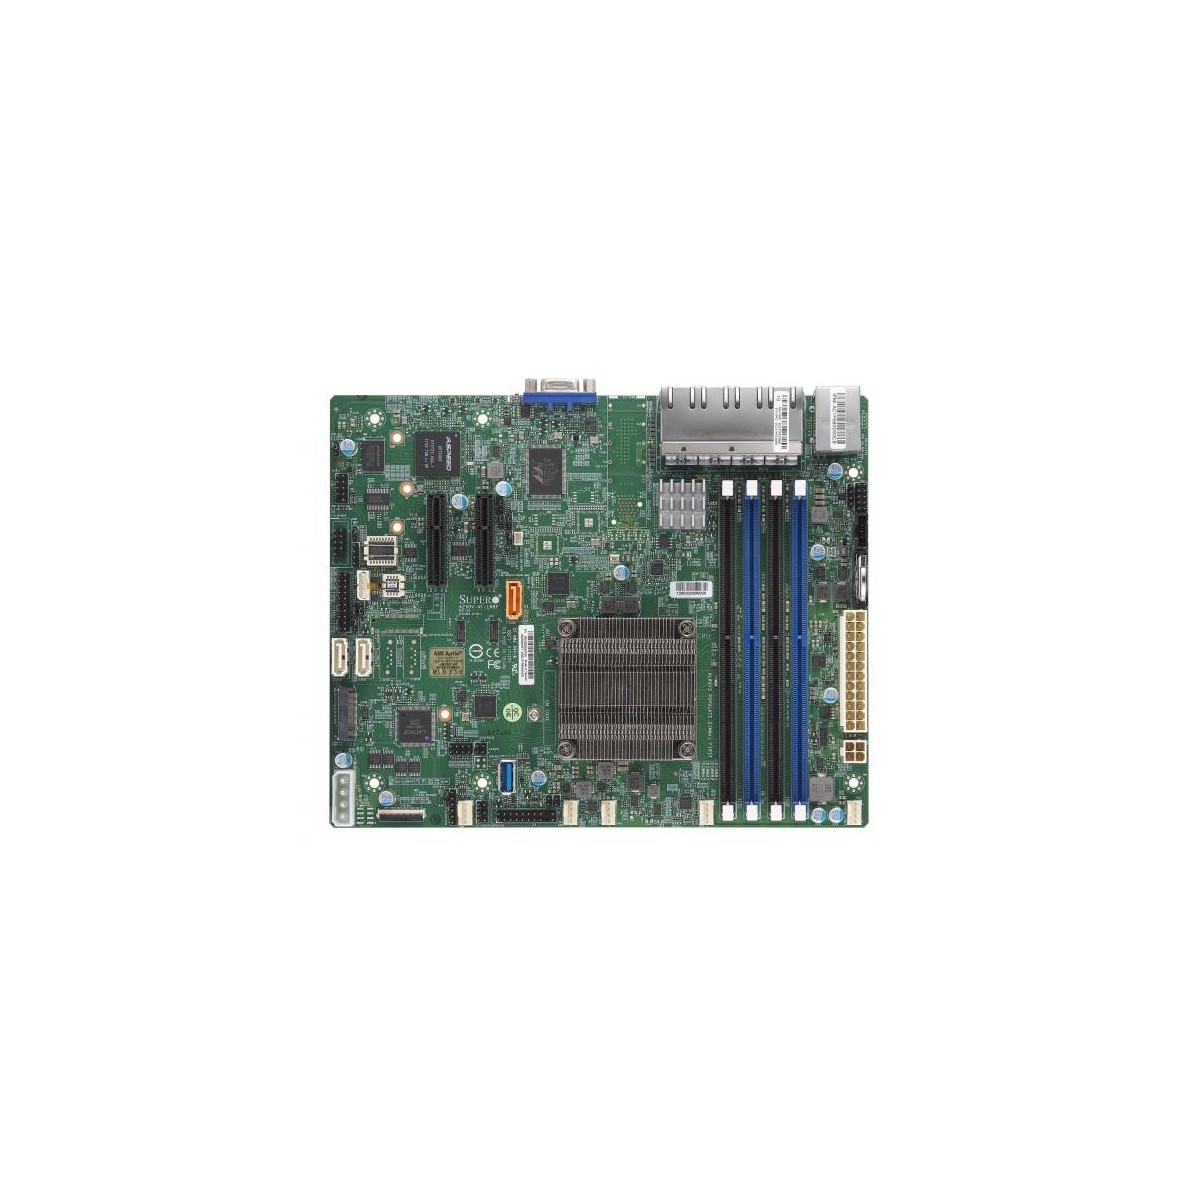 Supemicro 4-Core Denverton Eight 1GbE RJ45 Intel Quick Assist Technology, 1 PCI-E 3.0 x2, 8x 1GbE RJ45 LAN ports,